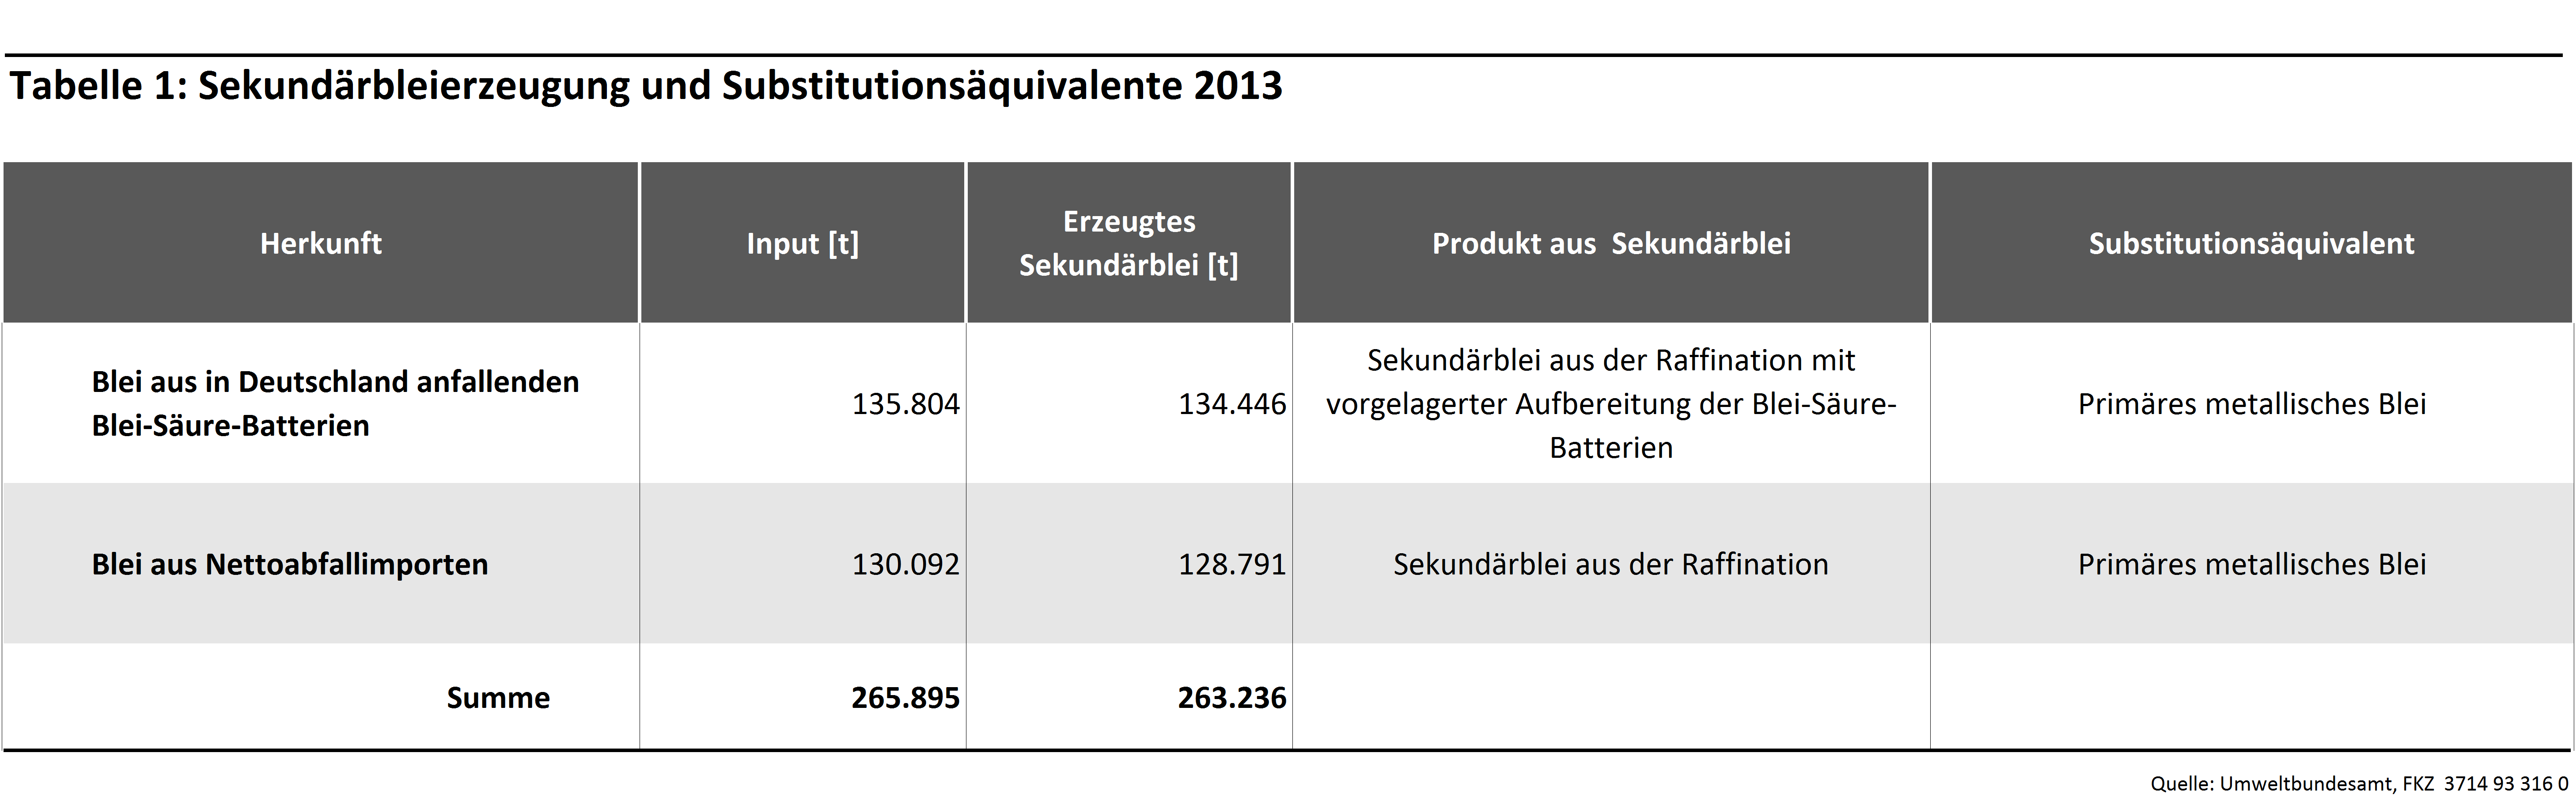 Tabelle 1: Sekundärbleierzeugung und Substitutionsäquivalente 2013